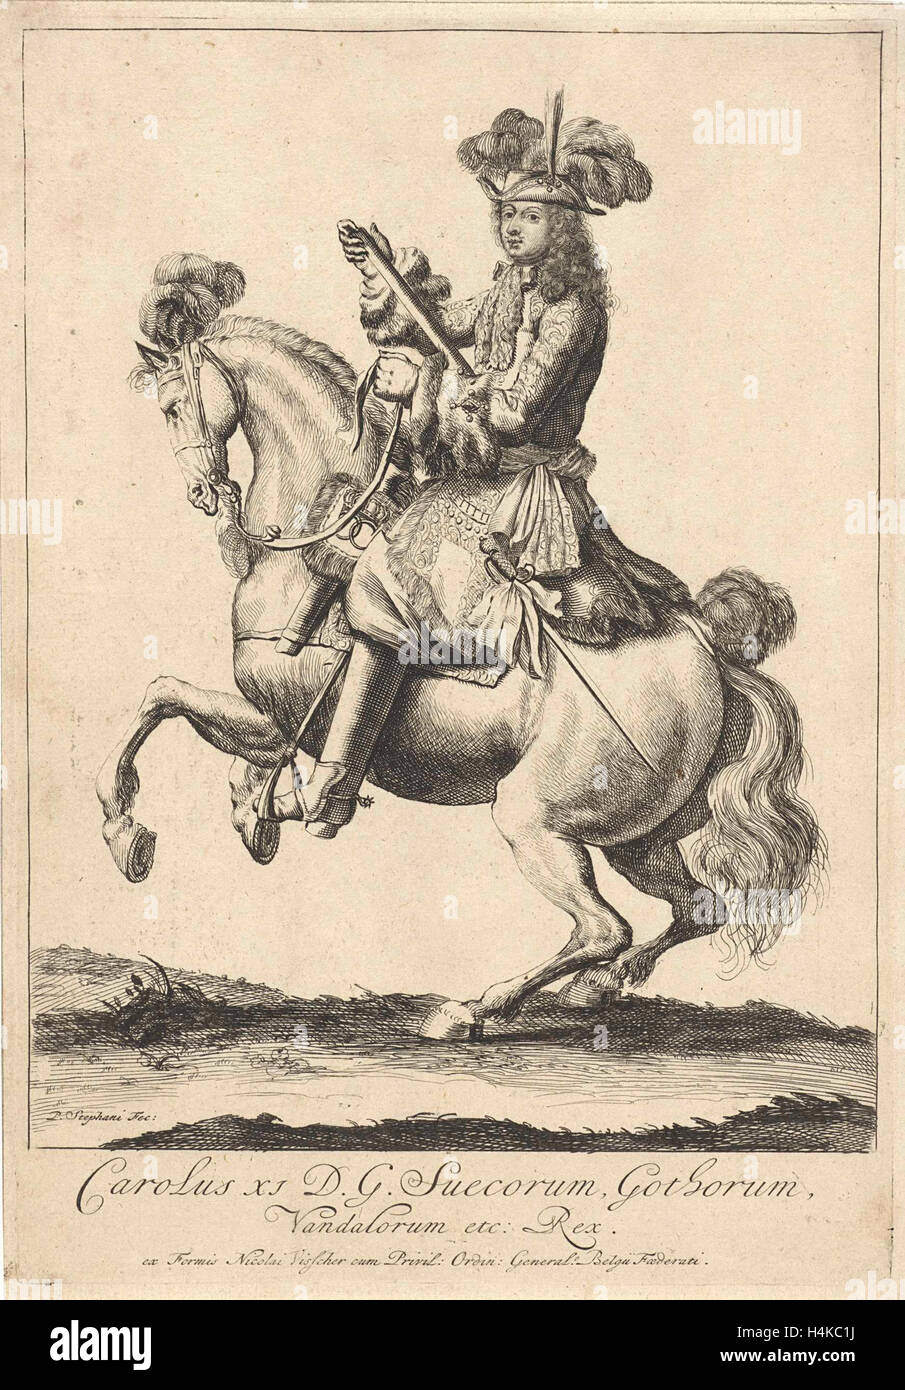 Retrato ecuestre del rey Carlos XI de Suecia, impresión de folletos: Pieter Stevens 1689, Nicolaes Visscher I, Nicolaes Visscher II Foto de stock